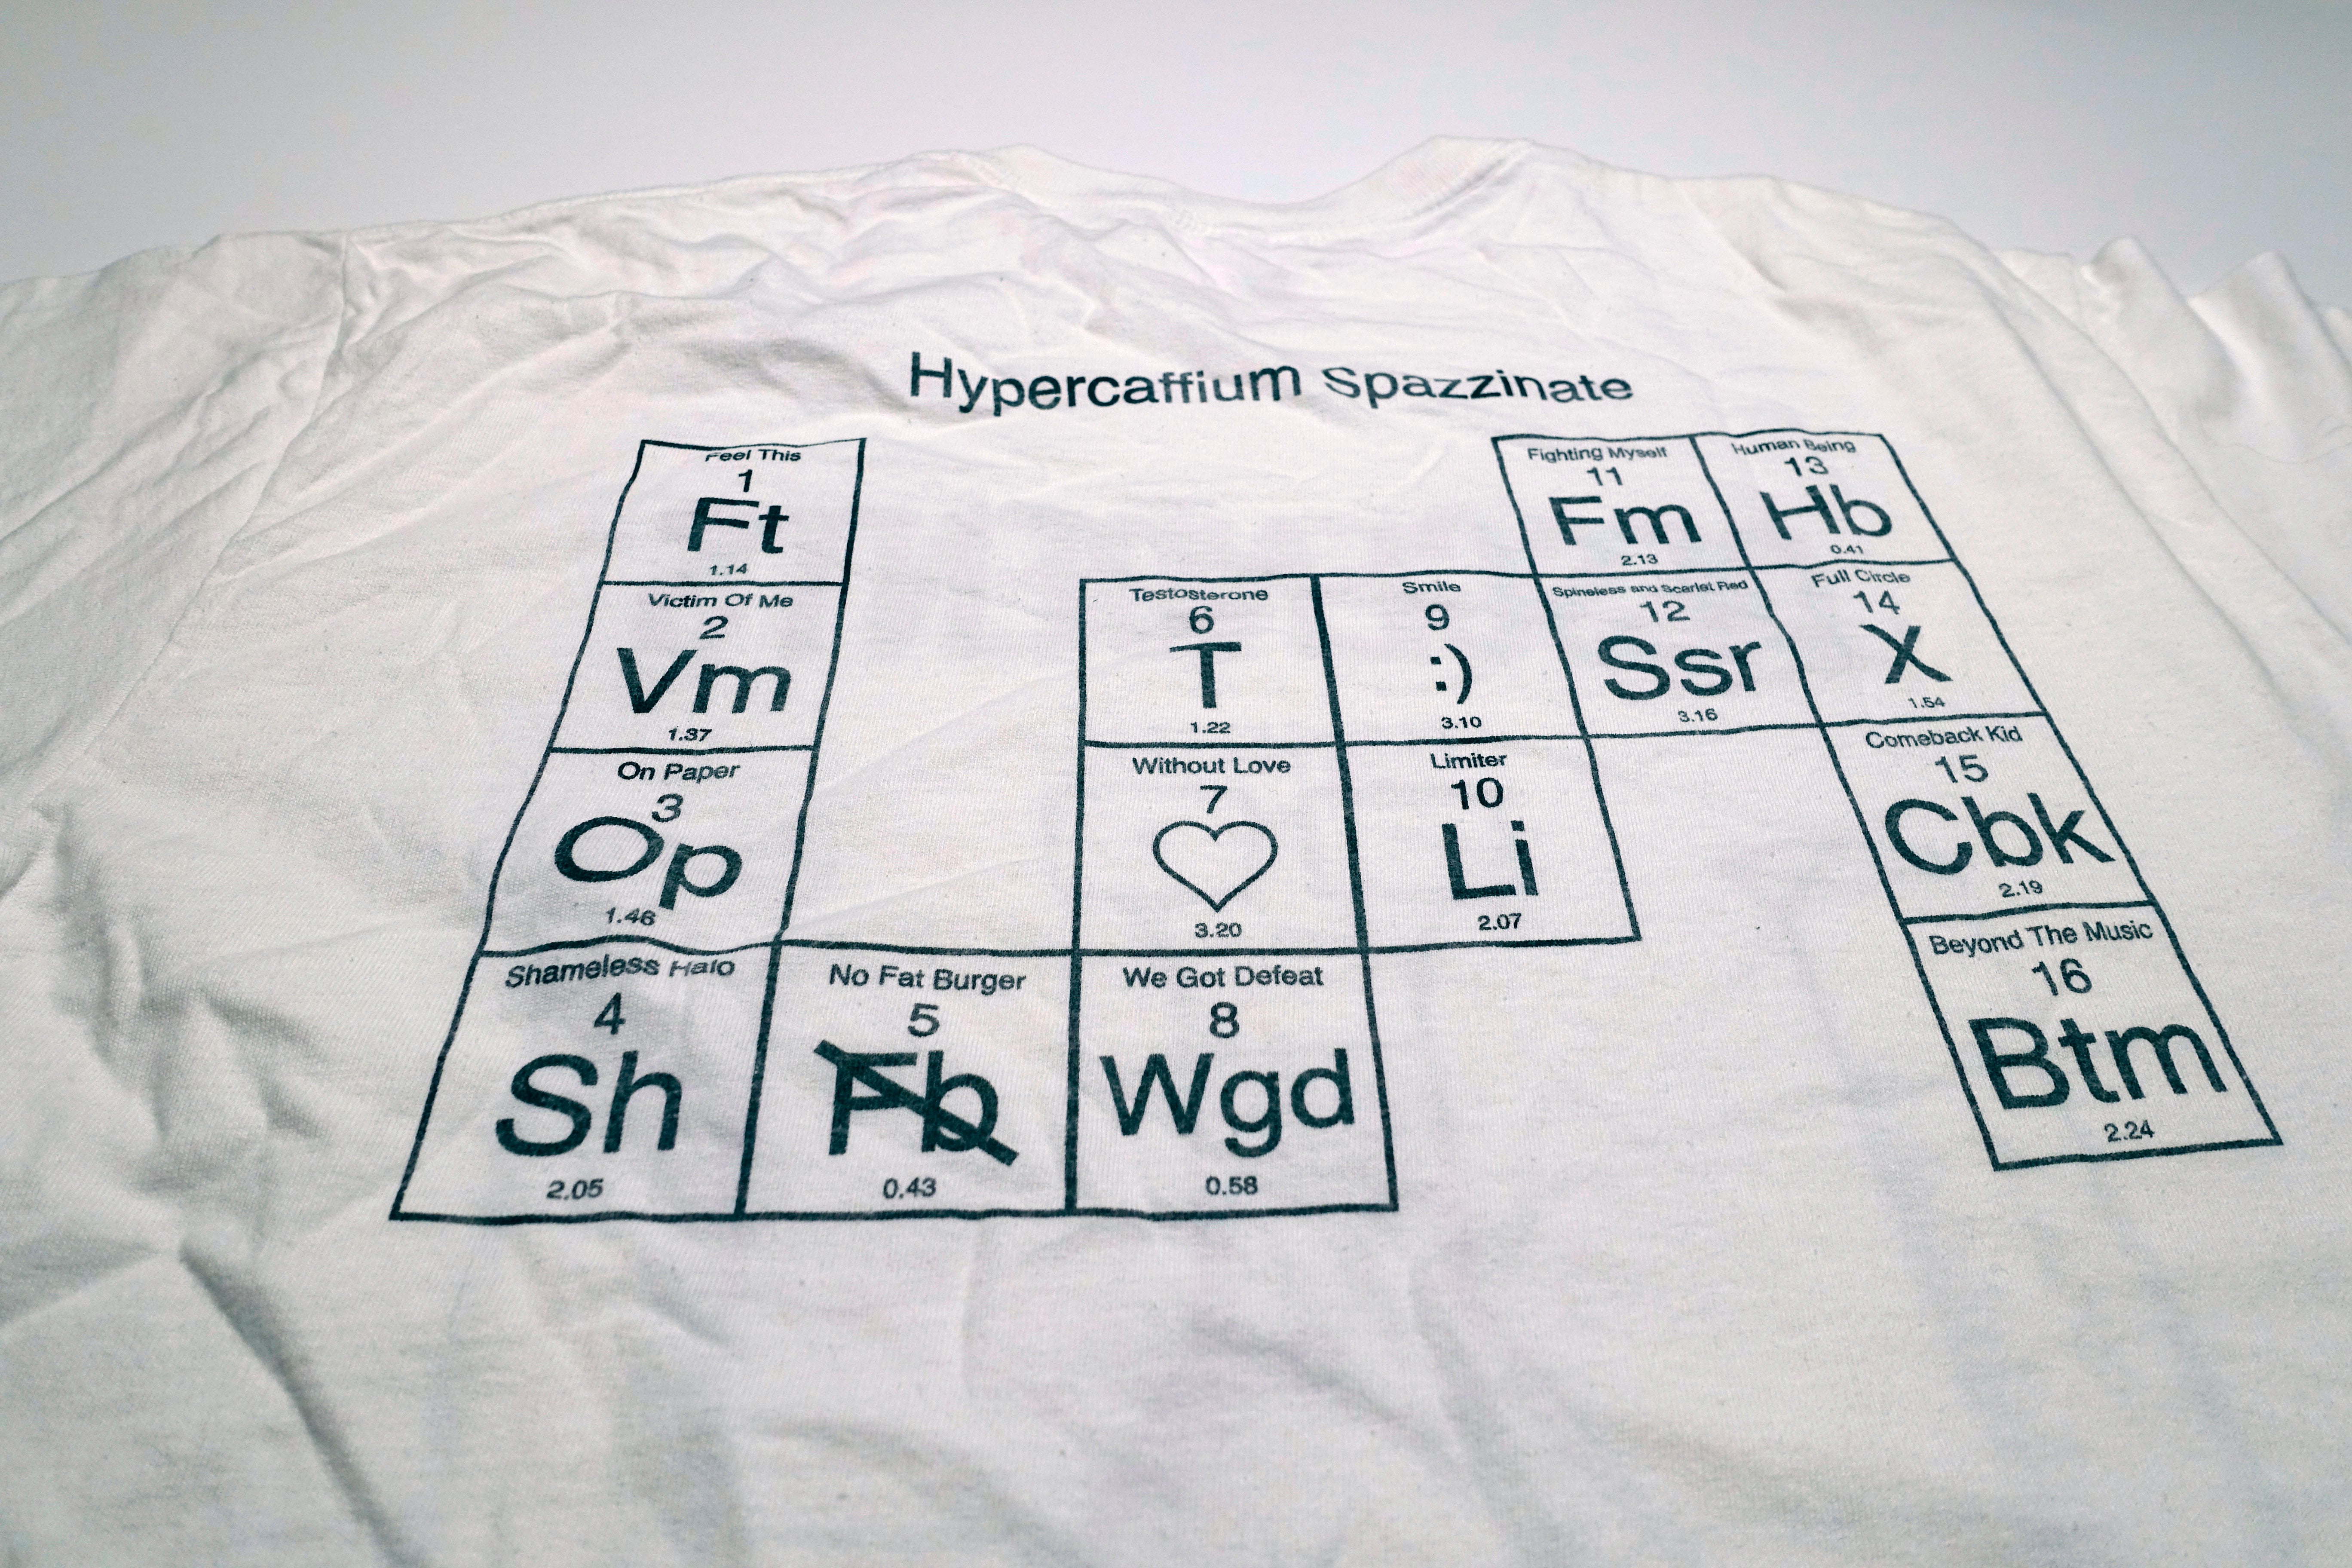 Descendents - Hypercaffium Spazzinate 2016 Tour Shirt Size Large